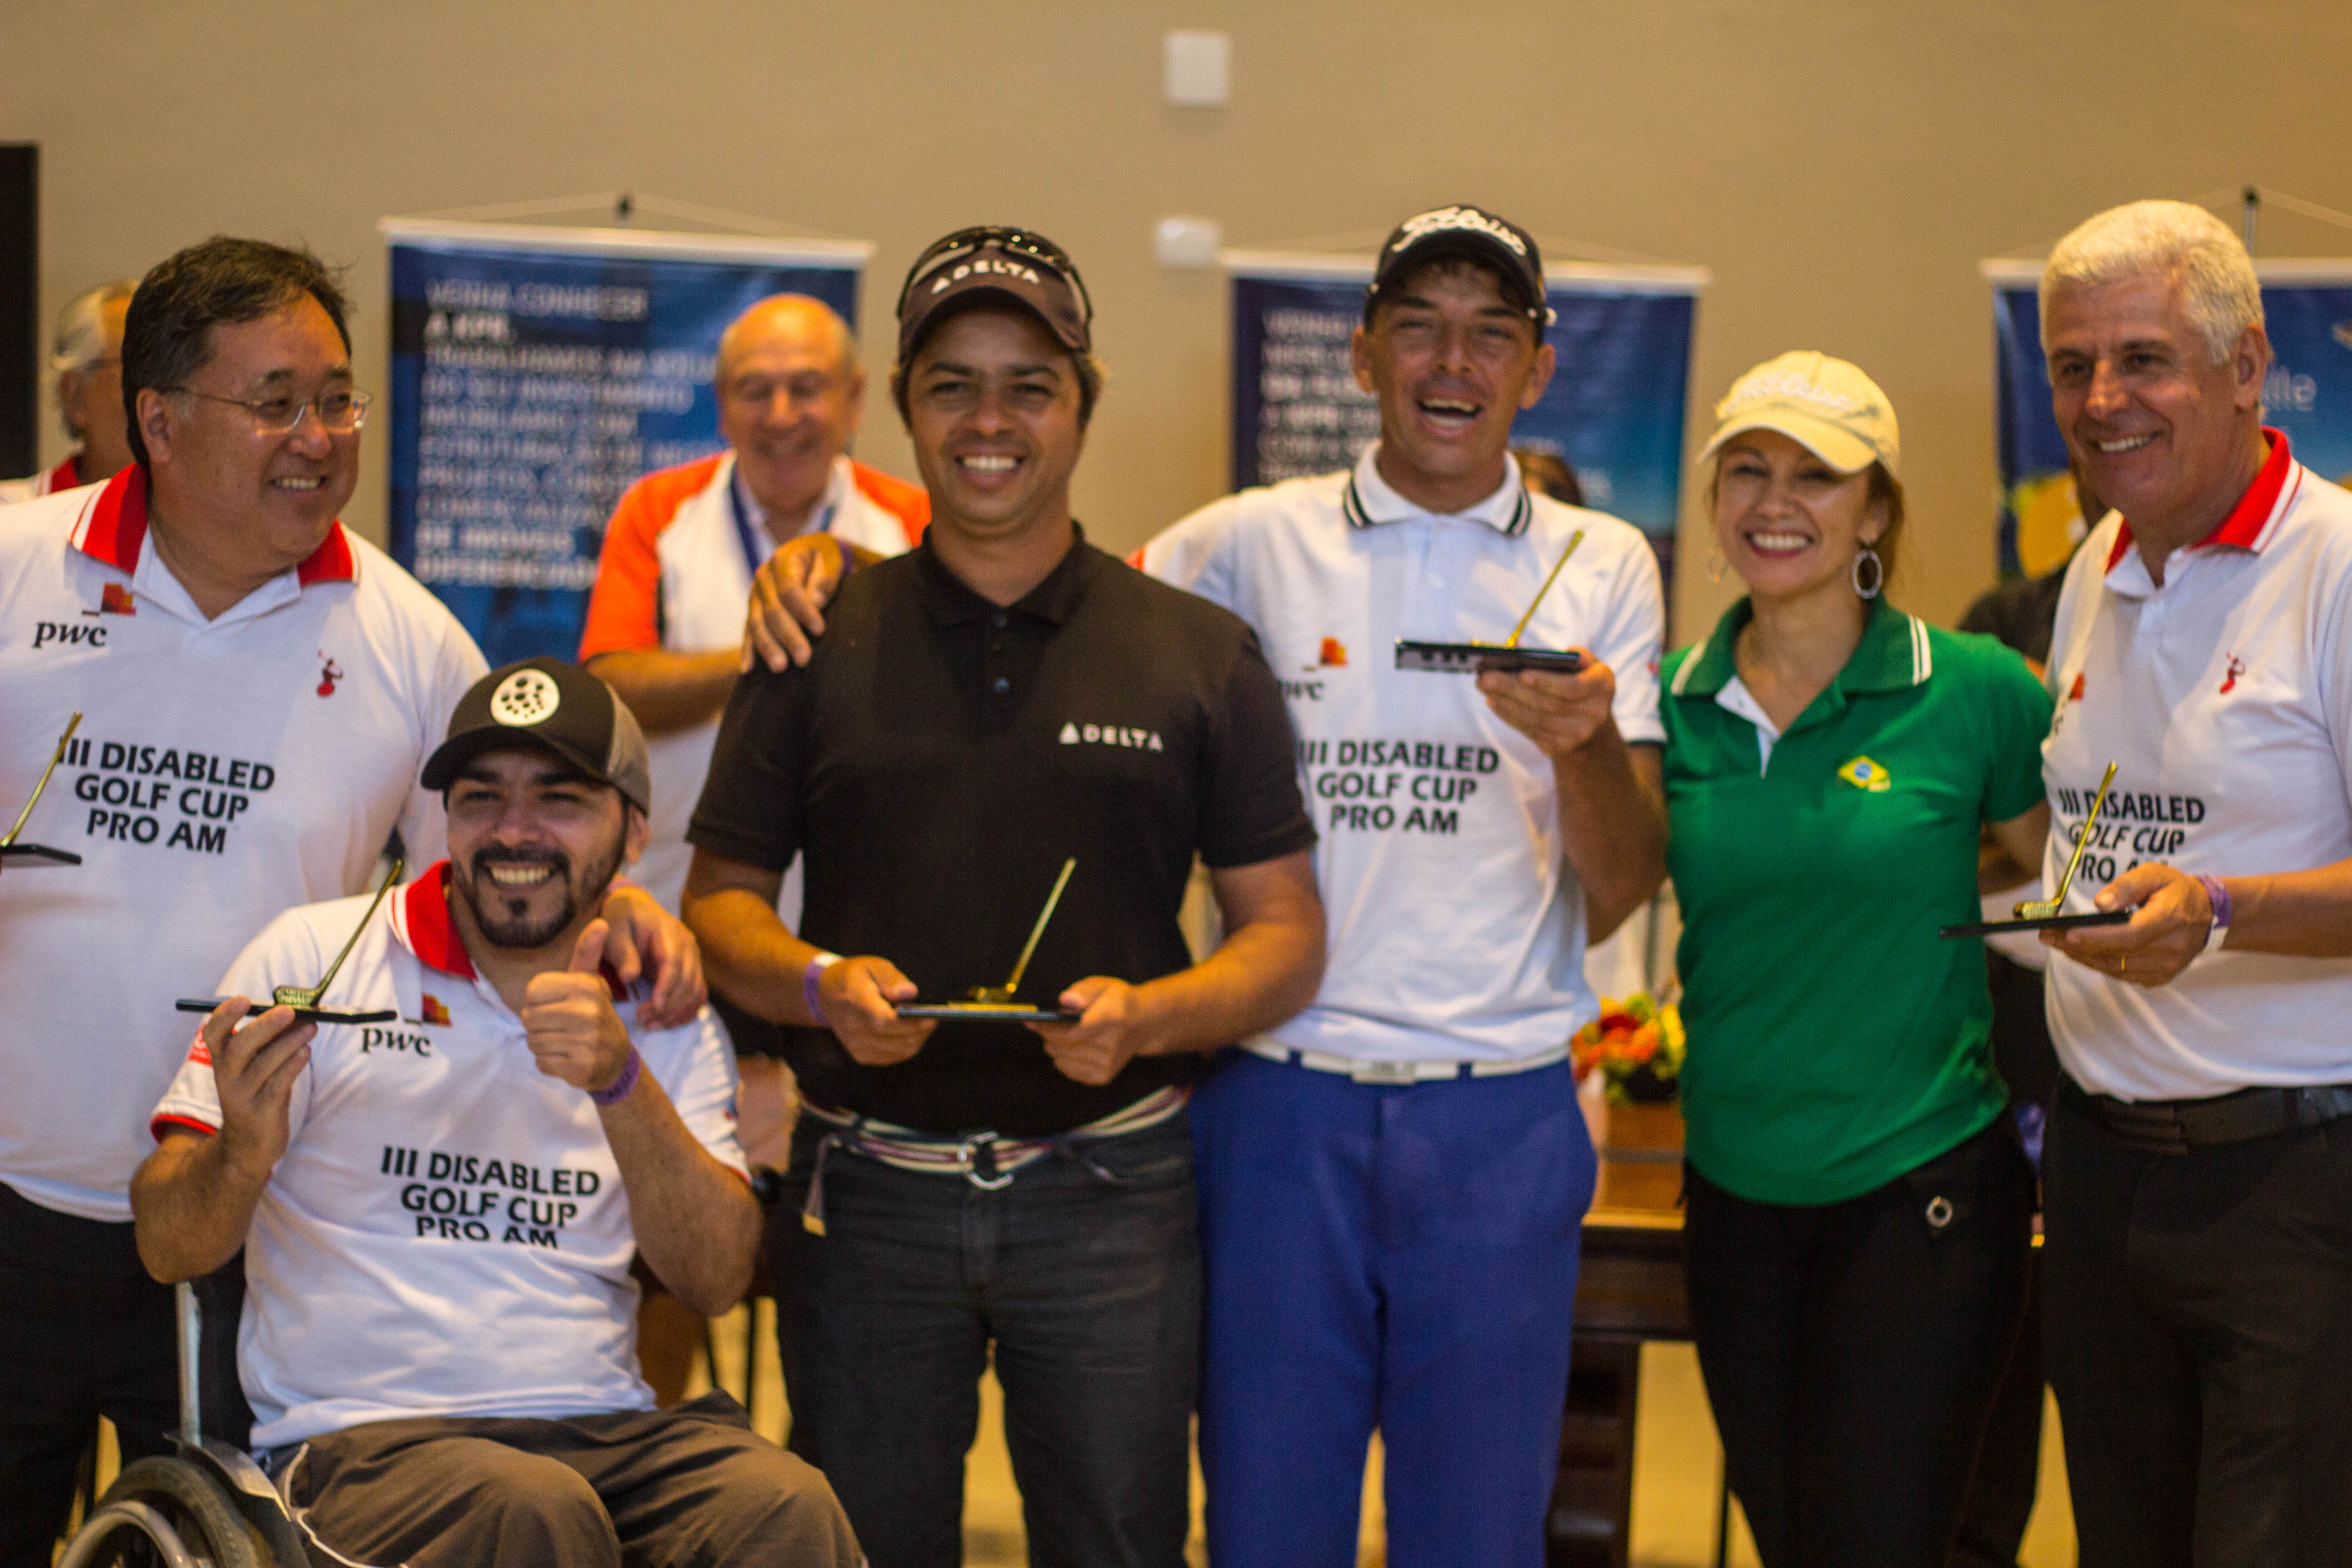 3ª Disabled Golf Cup Pro-Am, em São José dos Campos, mostra força do golfe adaptado no Brasil